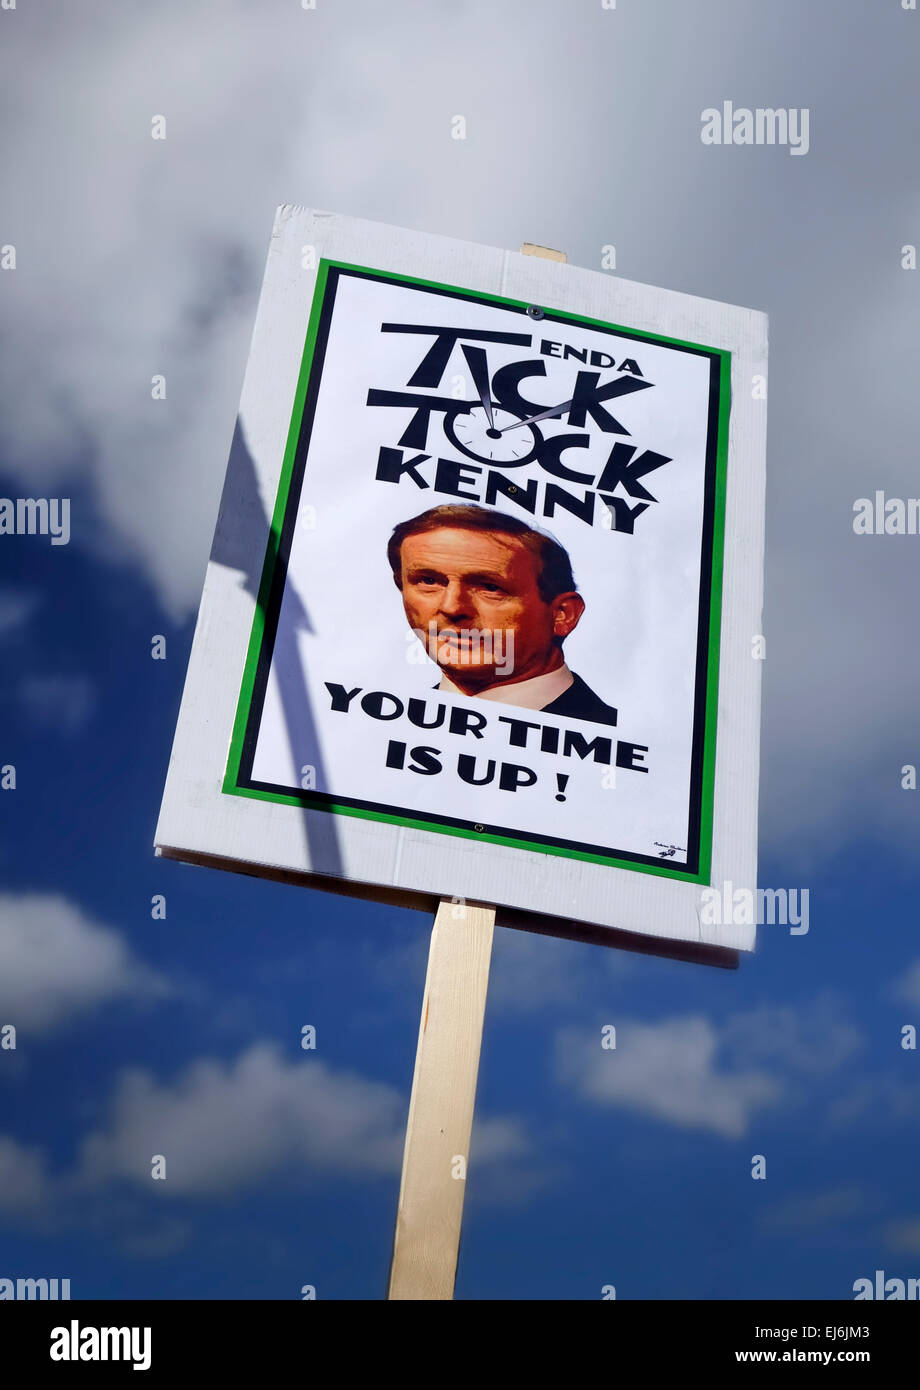 Acqua marzo Anti-tariffe idriche protesta avviso poster Enda Kenny (Primo Ministro irlandese) che il suo regno è finito. Dublino Irlanda Foto Stock